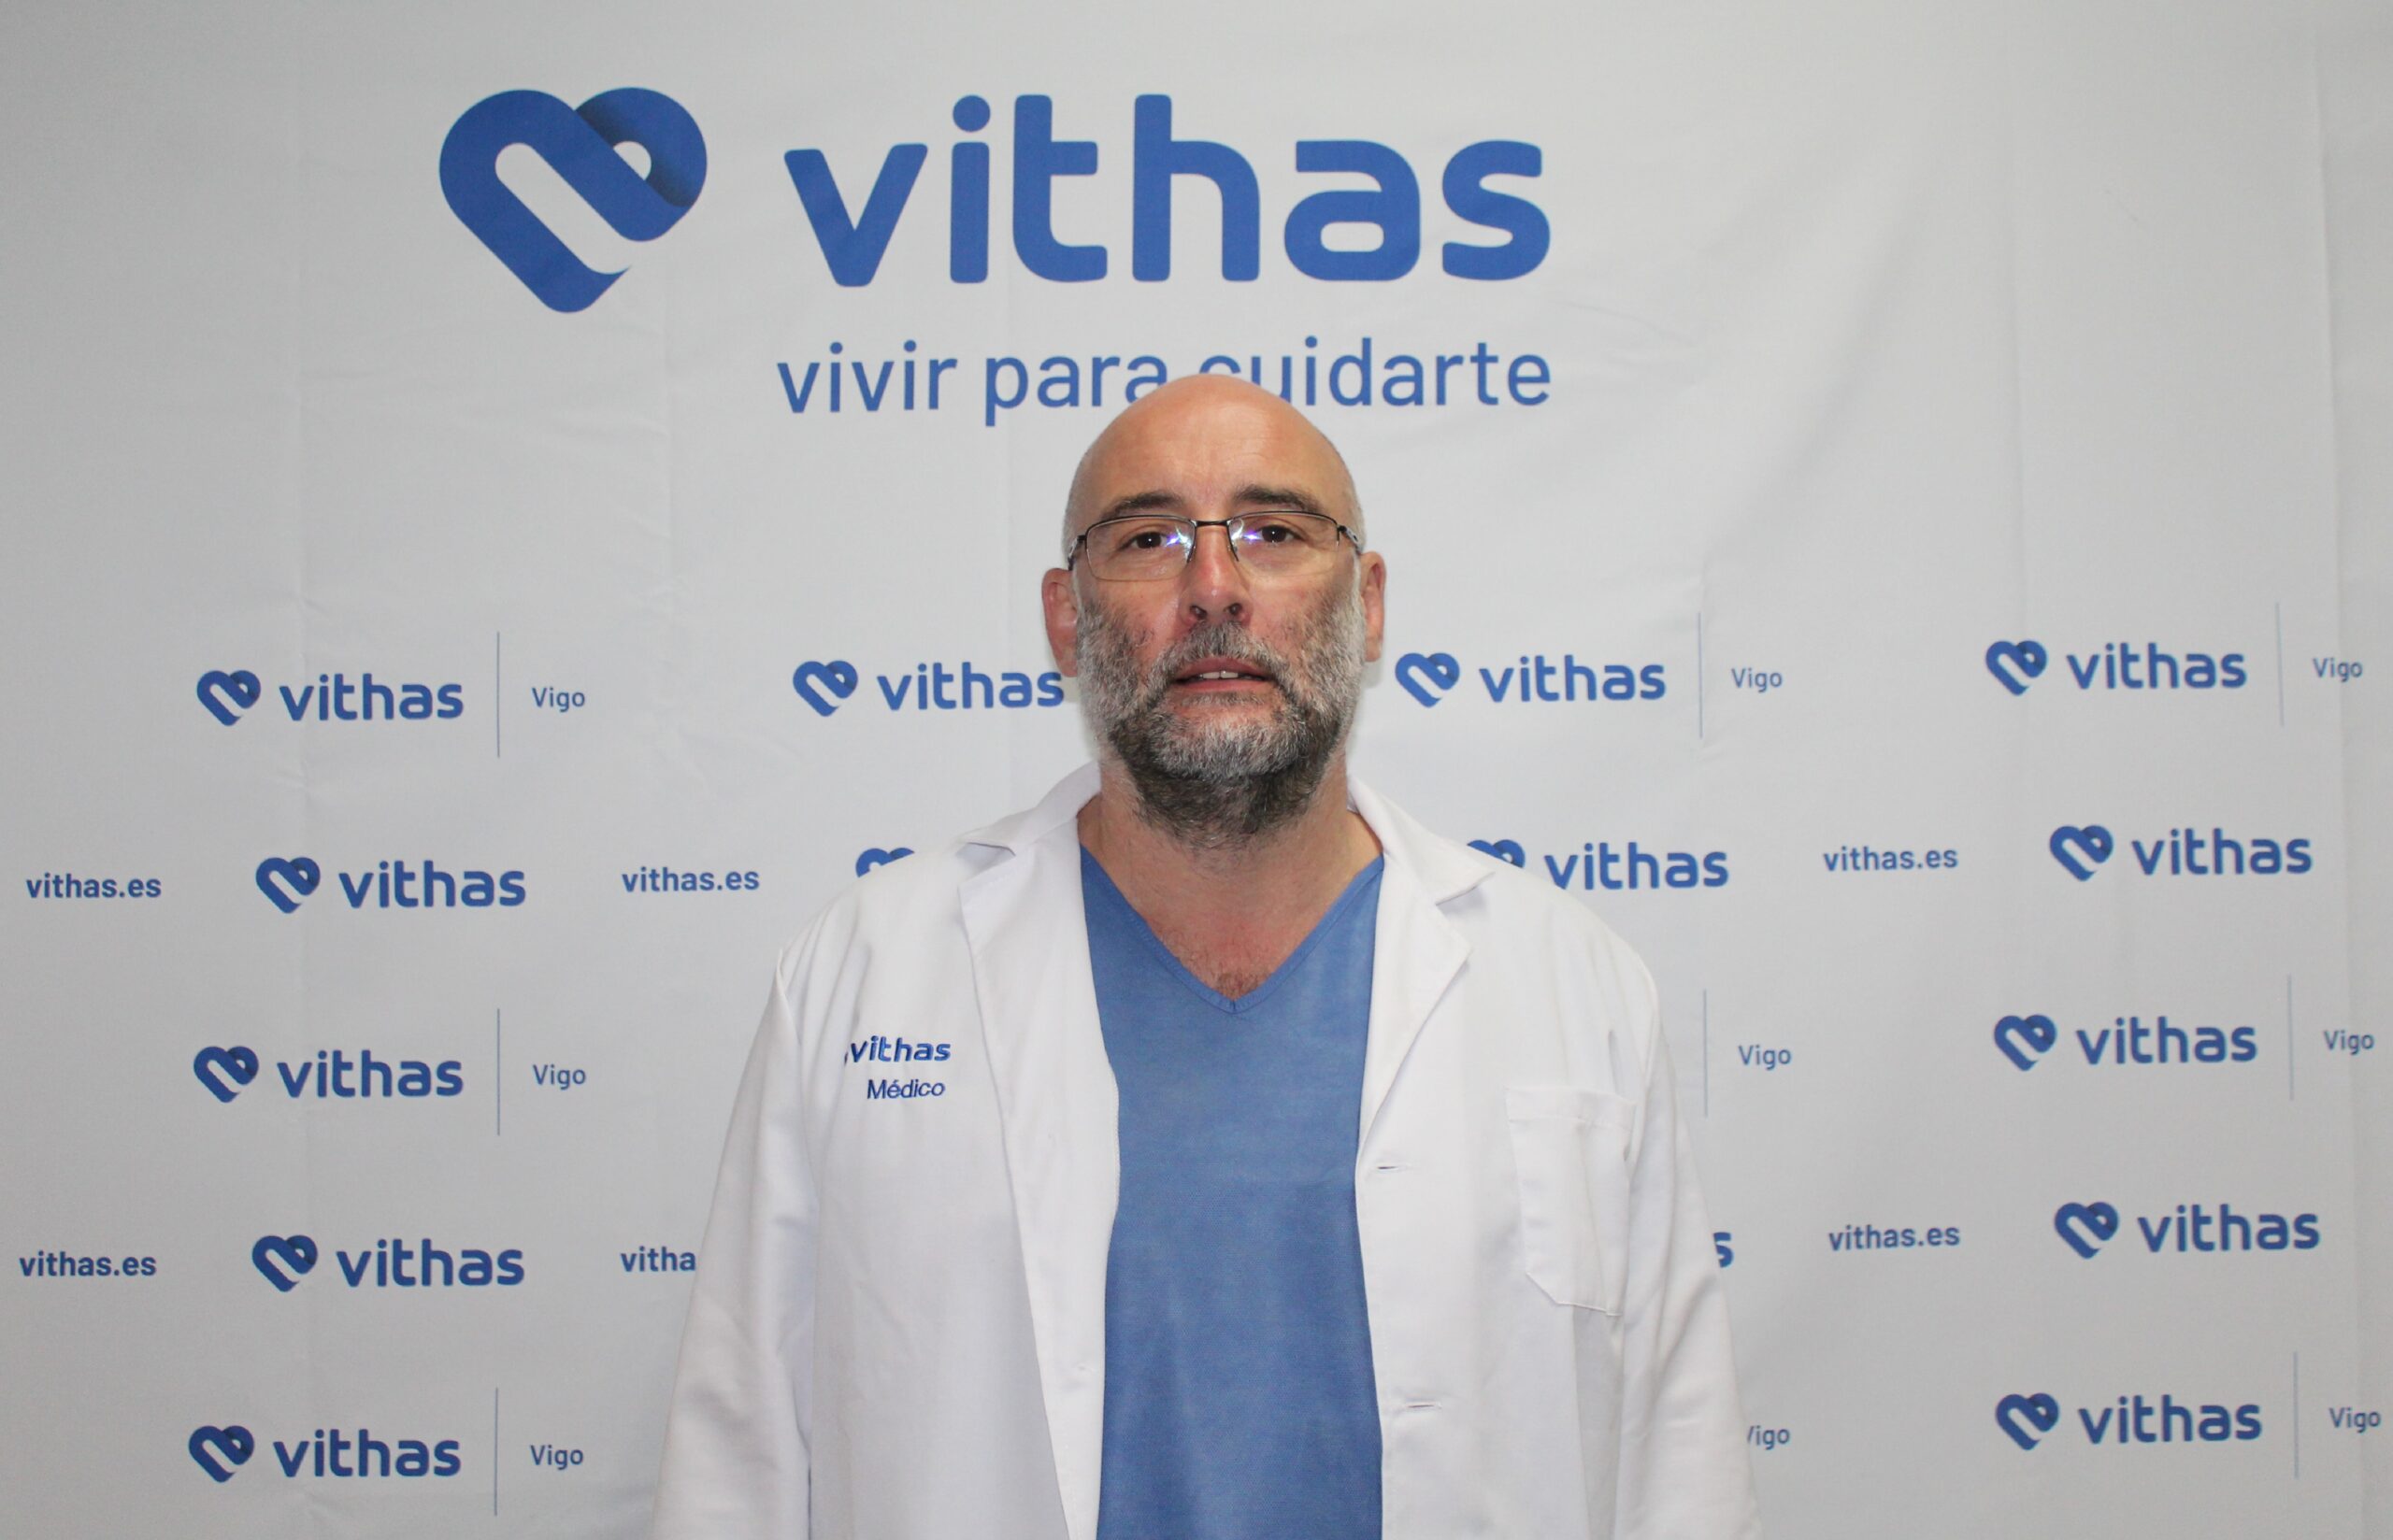 Dr. Juan José Vidal Insua